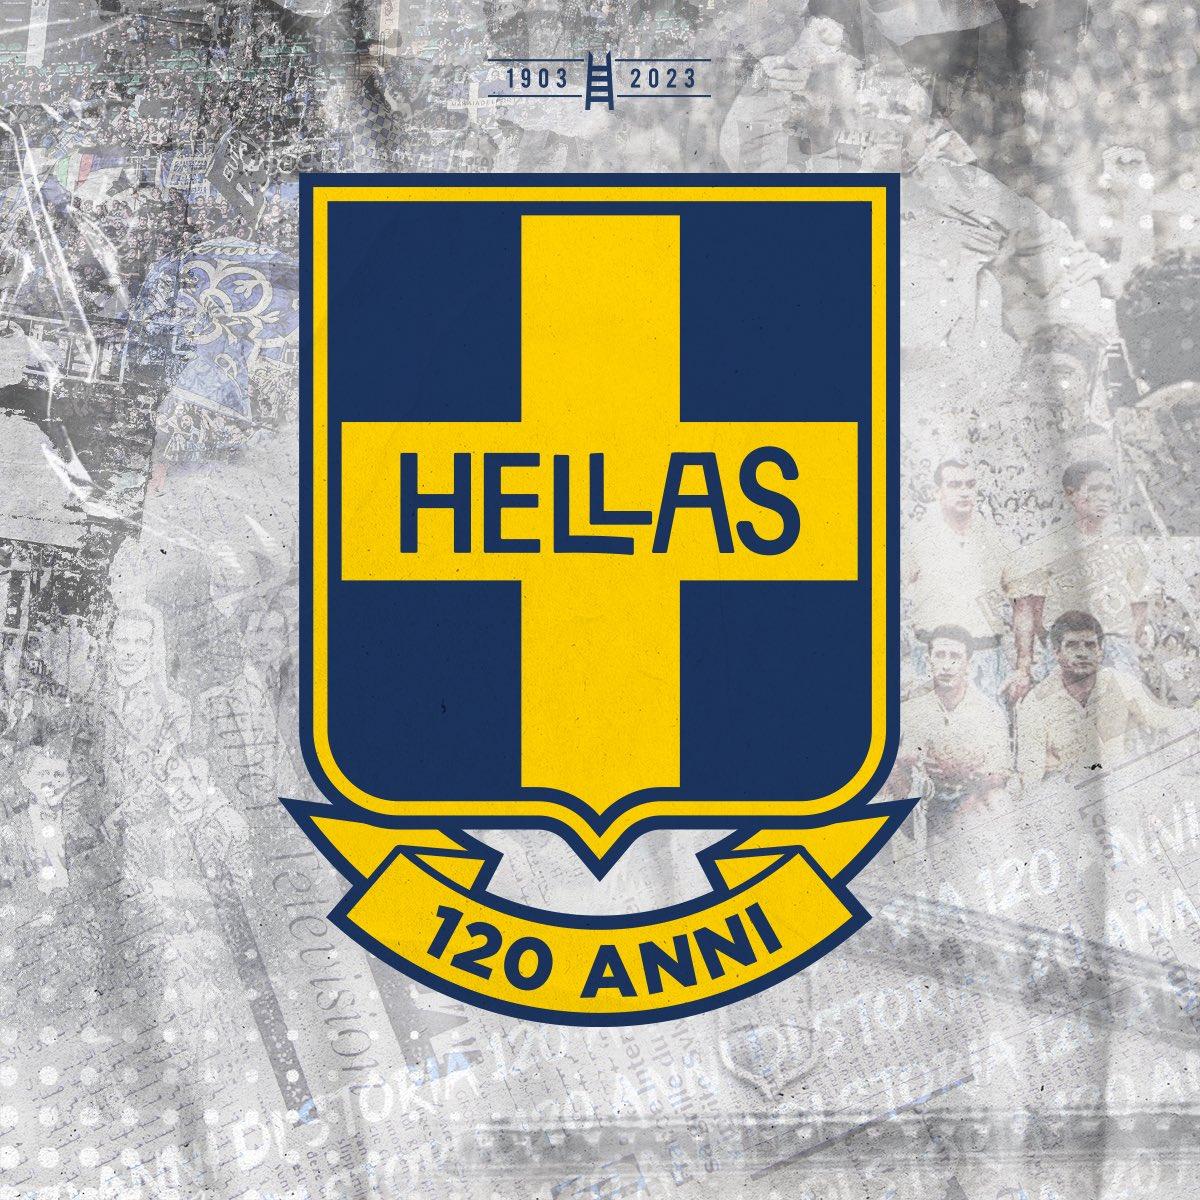 Hellas Verona presenta el logo de su 120 aniversario